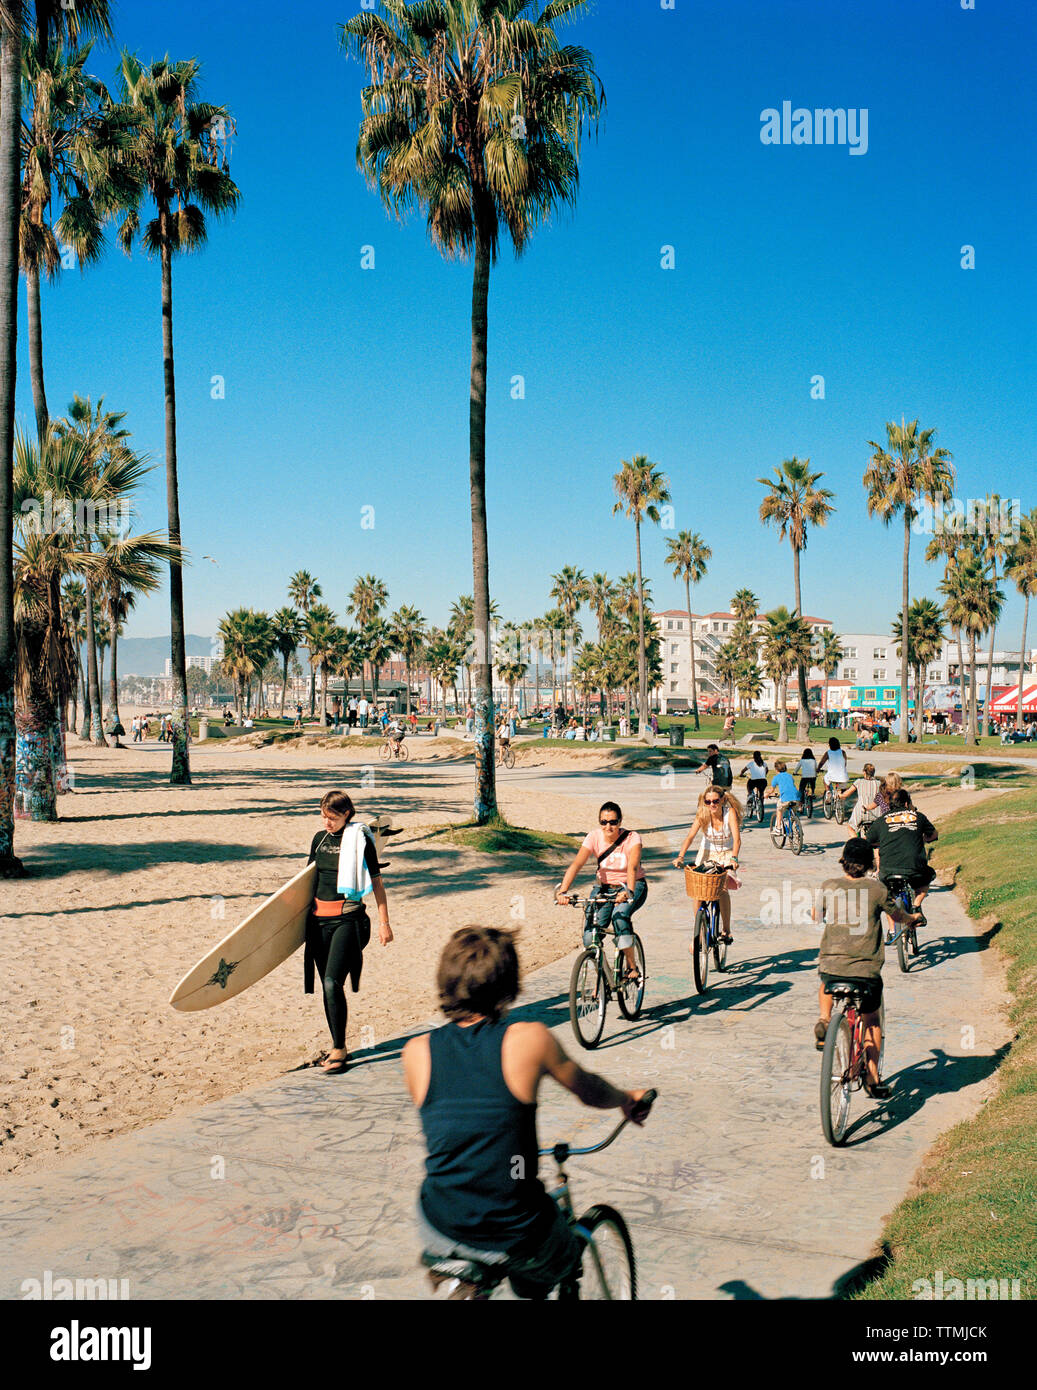 USA, Californie, Los Angeles, Venice Beach, les surfers et les cyclistes sur la promenade de Venice Beach Banque D'Images